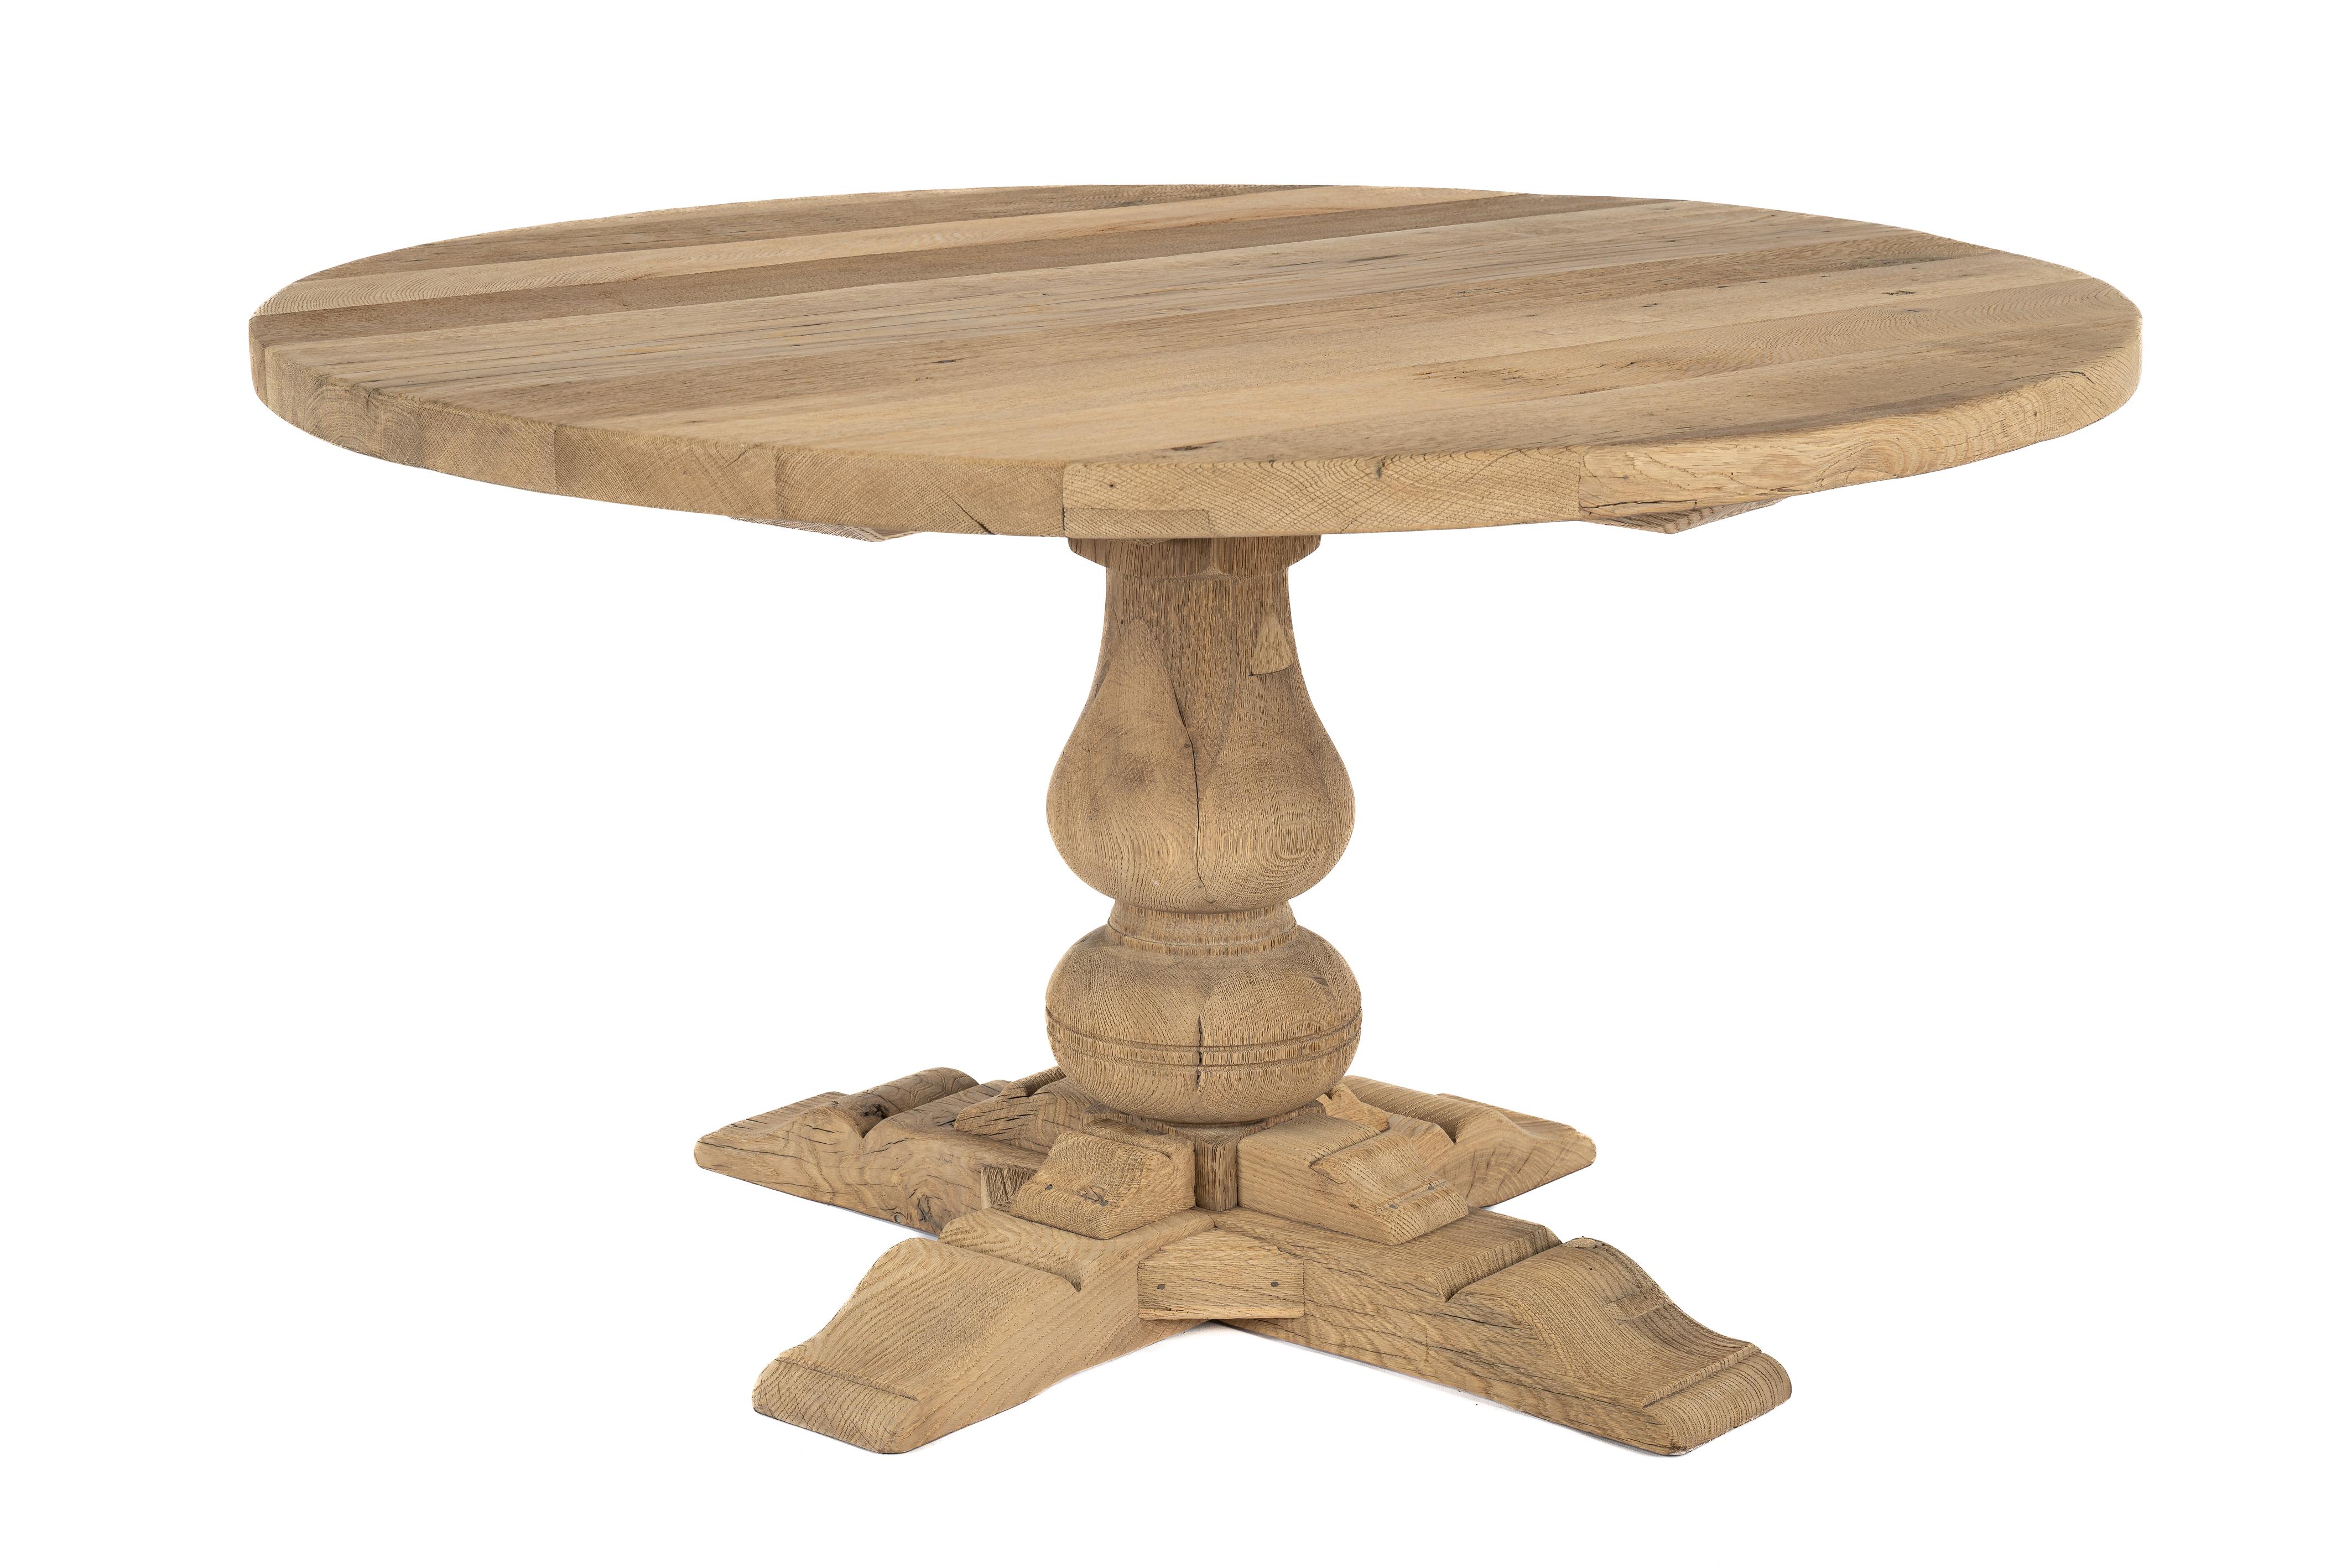 Dieser runde Tisch wurde in den späten 1960er Jahren aus wiedergewonnenem Eichenholz gefertigt. Das Eichenholz stammt aus alten Fachwerkhäusern in Deutschland, wo es jahrhundertelang der Witterung ausgesetzt war. Durch diese Exposition hat das Holz